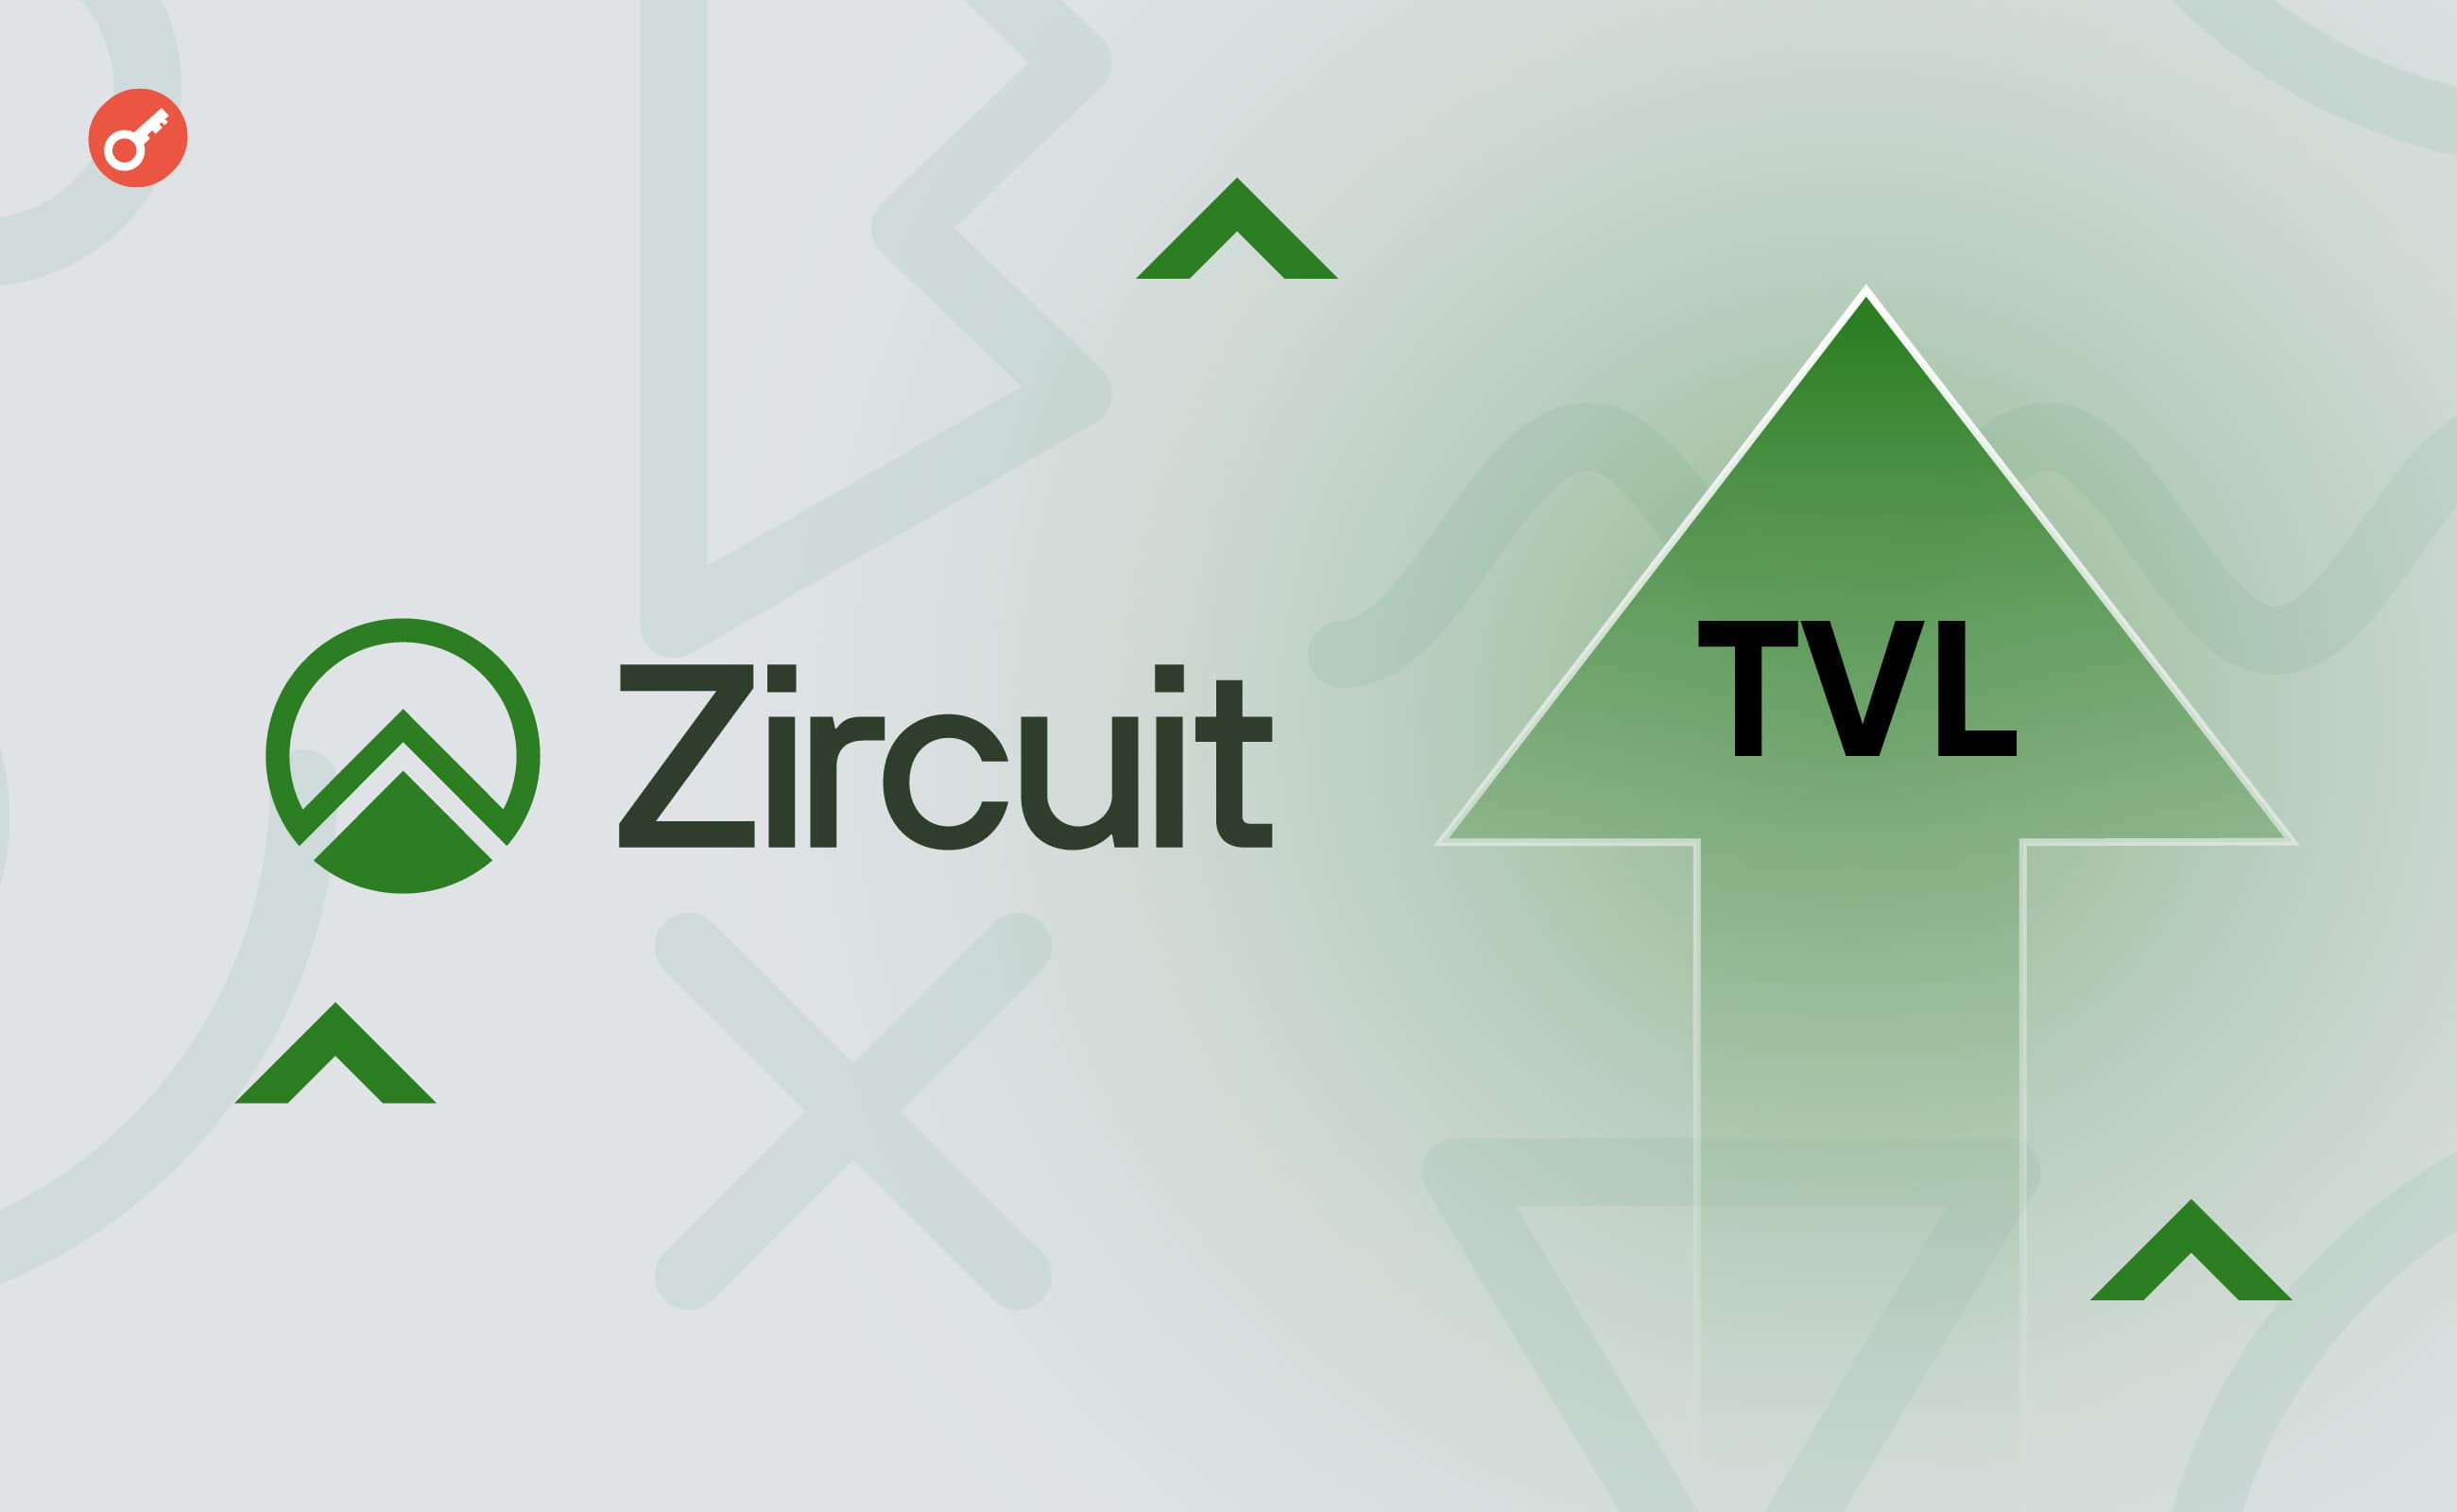 Команда Zircuit оголосила про зростання TVL до $500 млн та інтеграцію Ethena. Головний колаж новини.